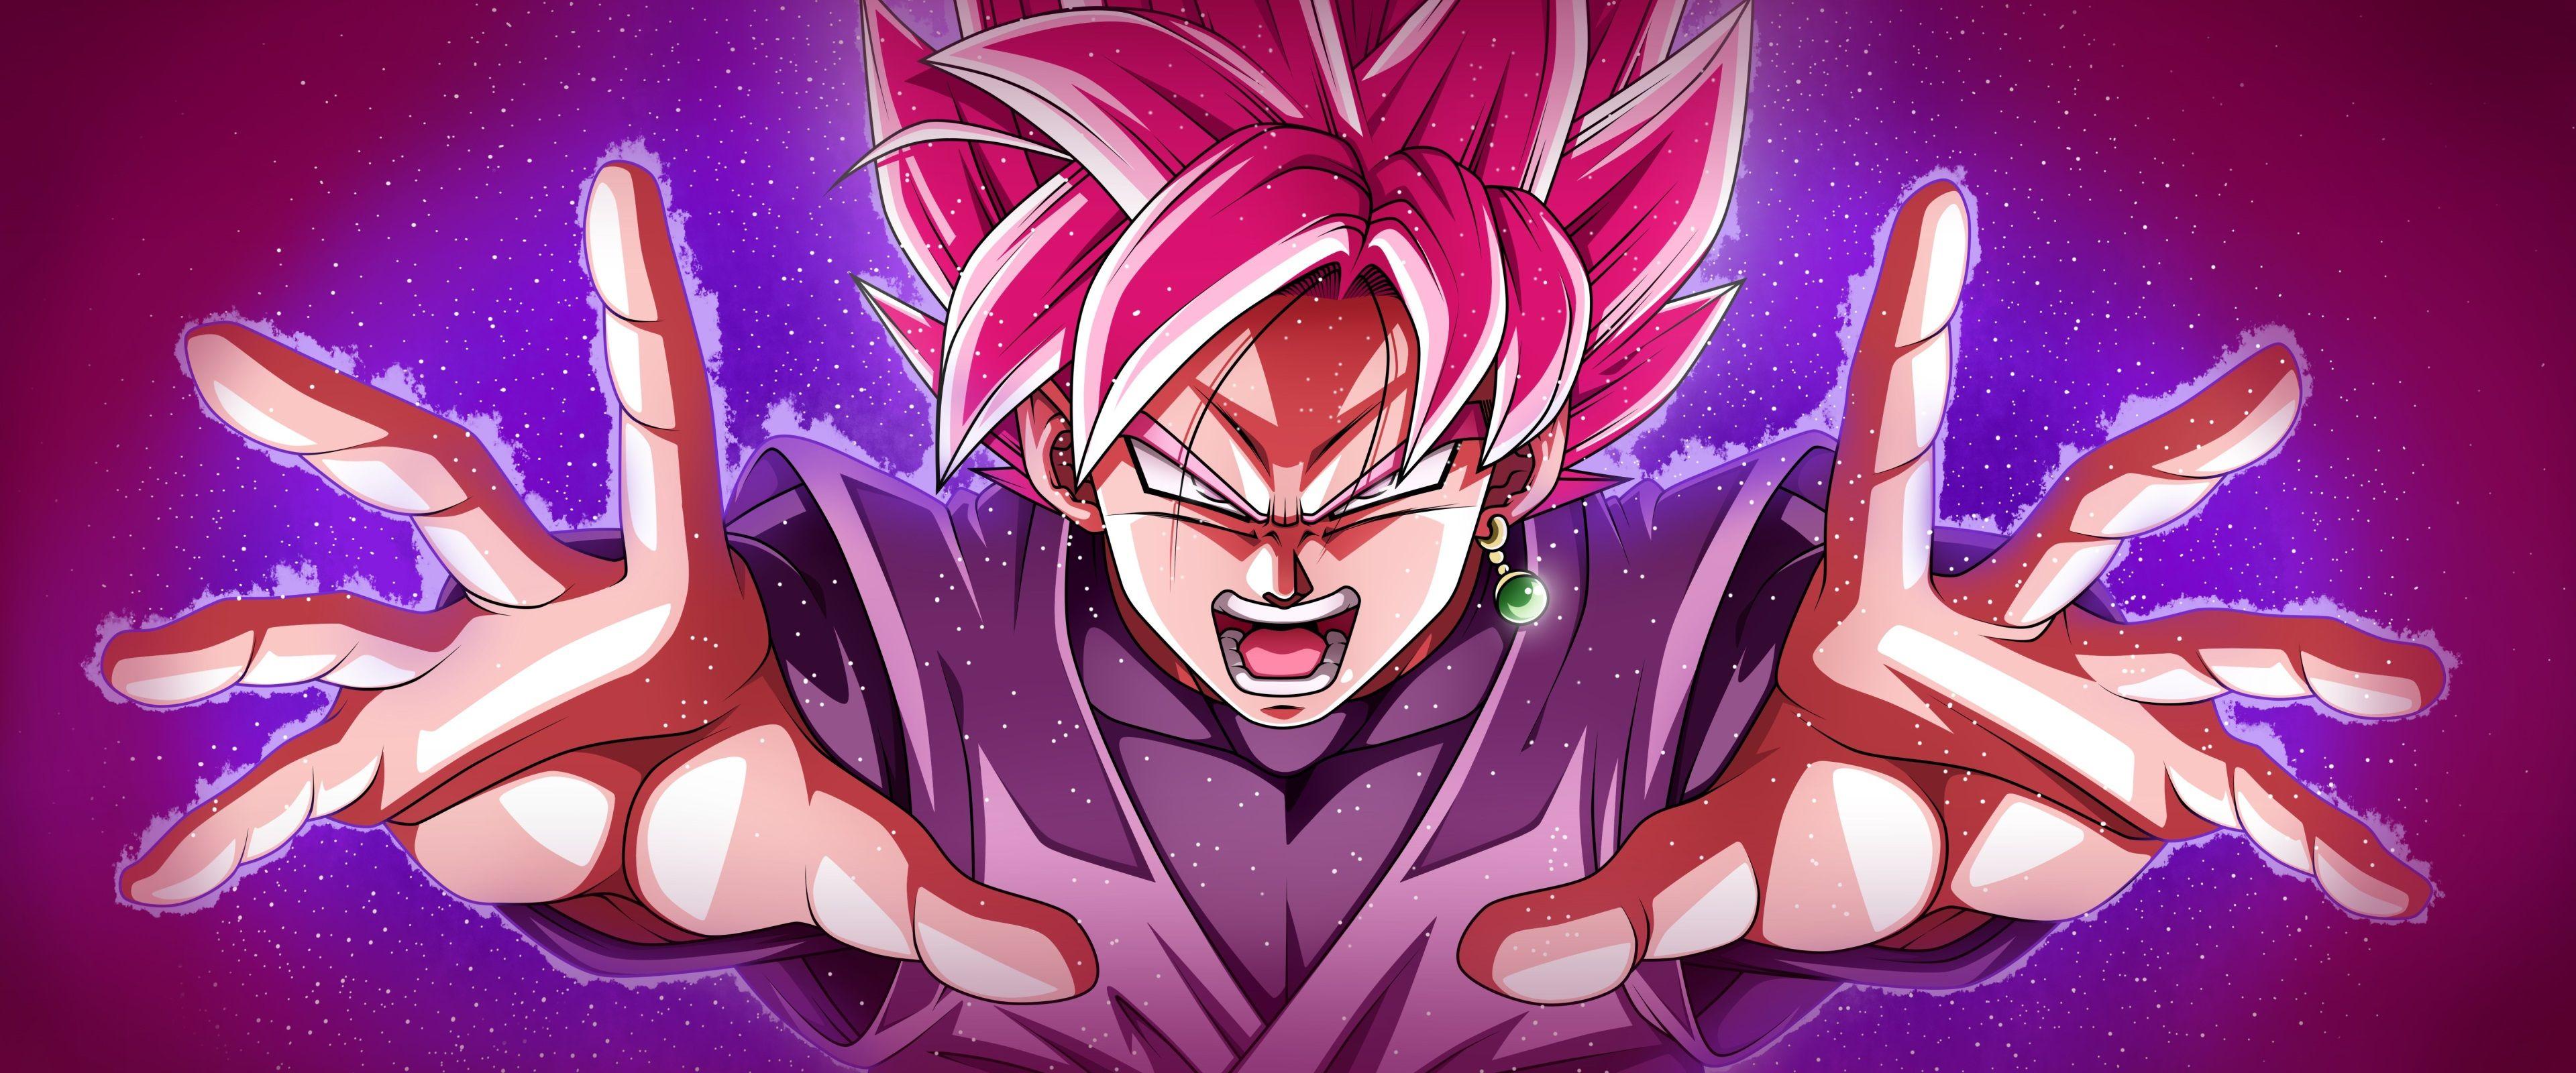 Goku Super Saiyan Rose Wallpapers - Top Free Goku Super Saiyan Rose